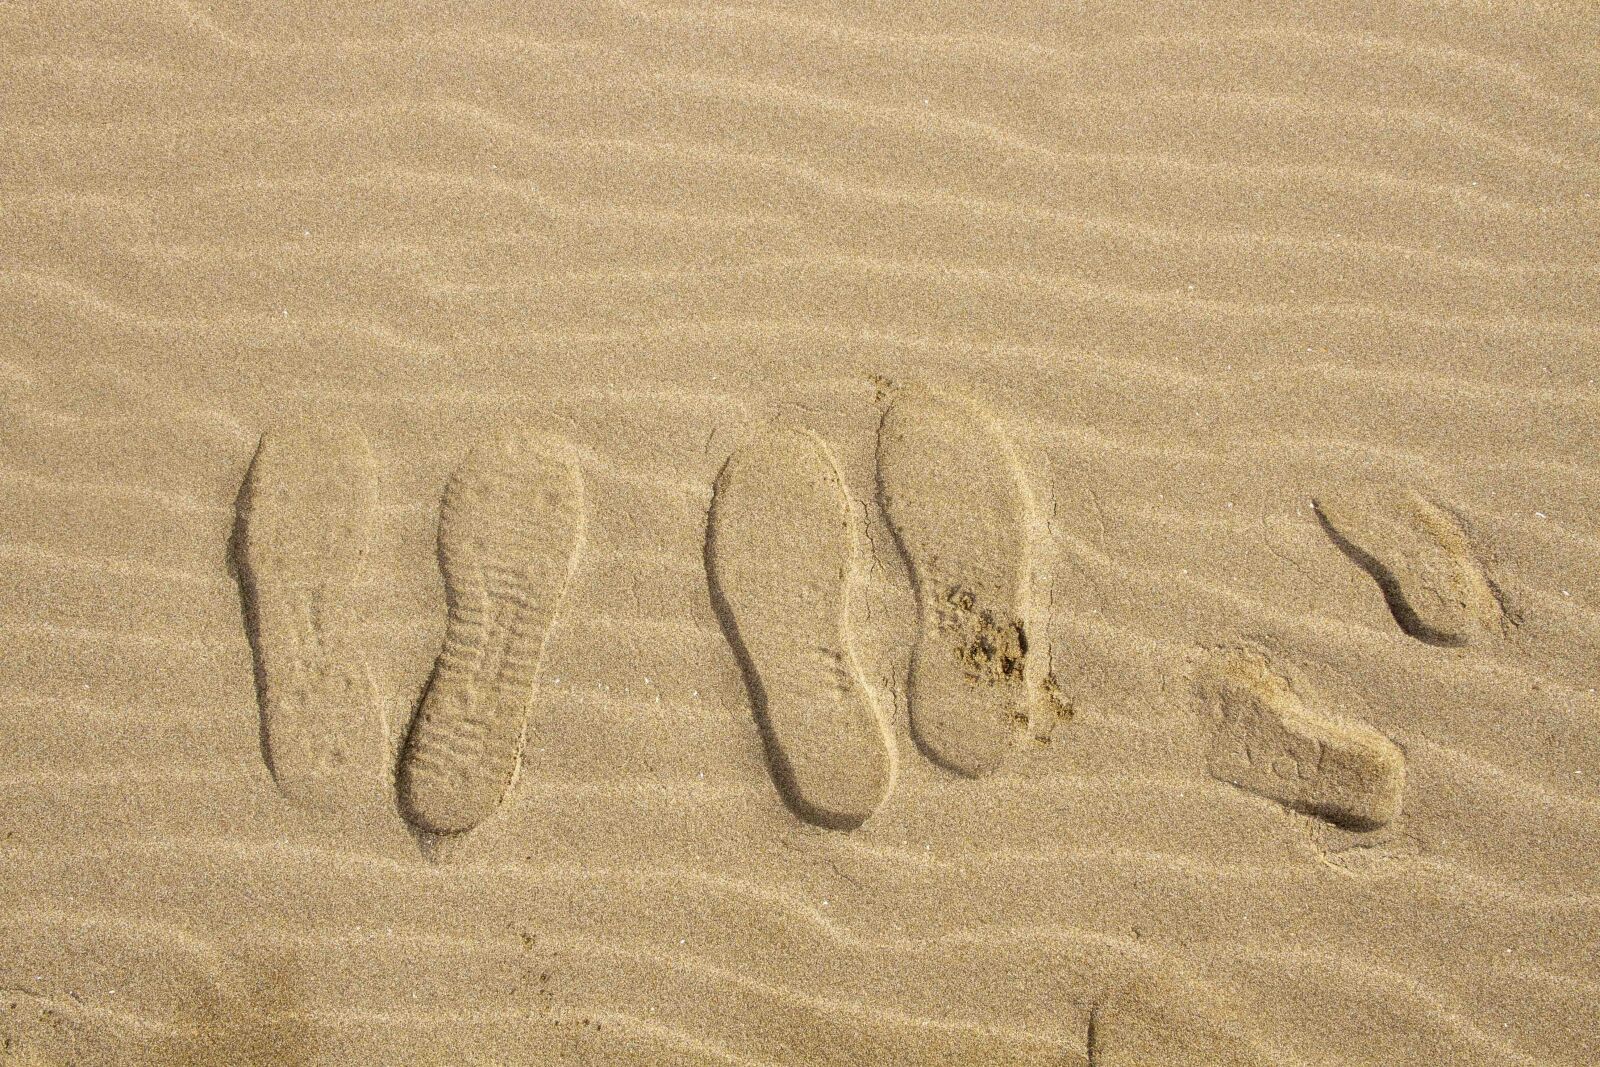 Canon EOS 7D sample photo. Feet, beach, sand photography